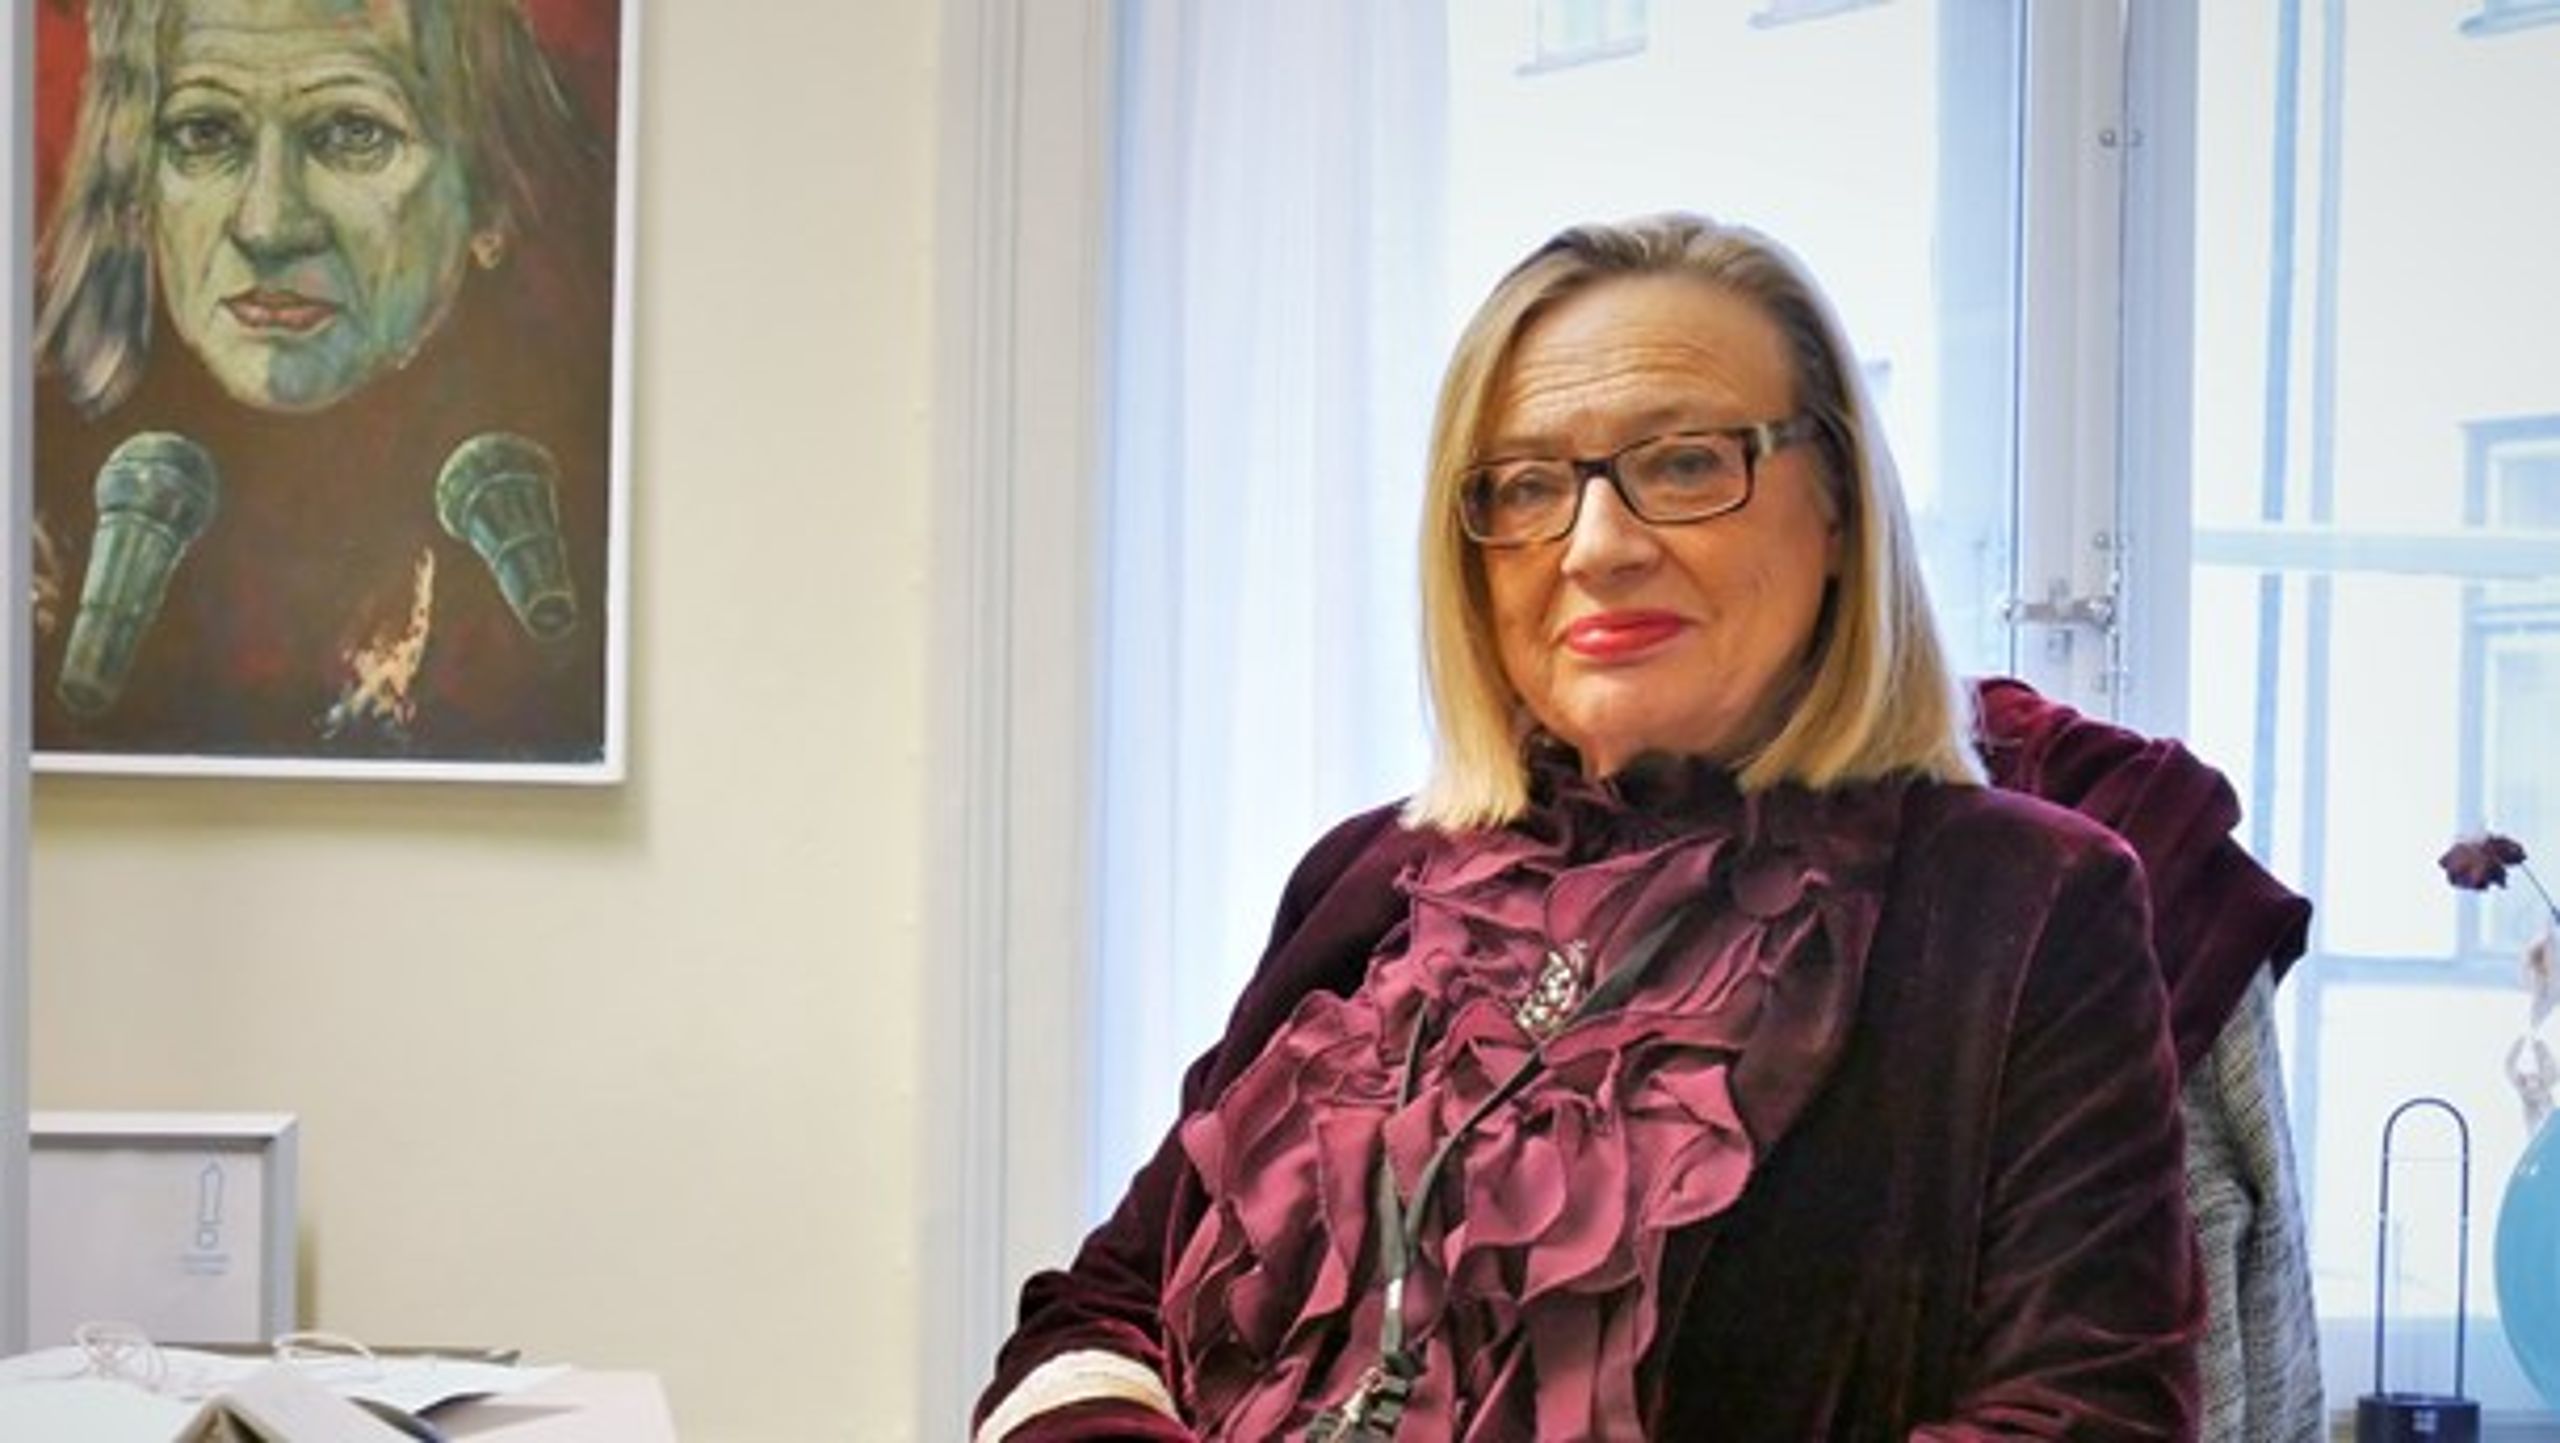 Karin Rågsjö (V) på sitt kontor. Porträttet av henne på väggen har hennes man målat.